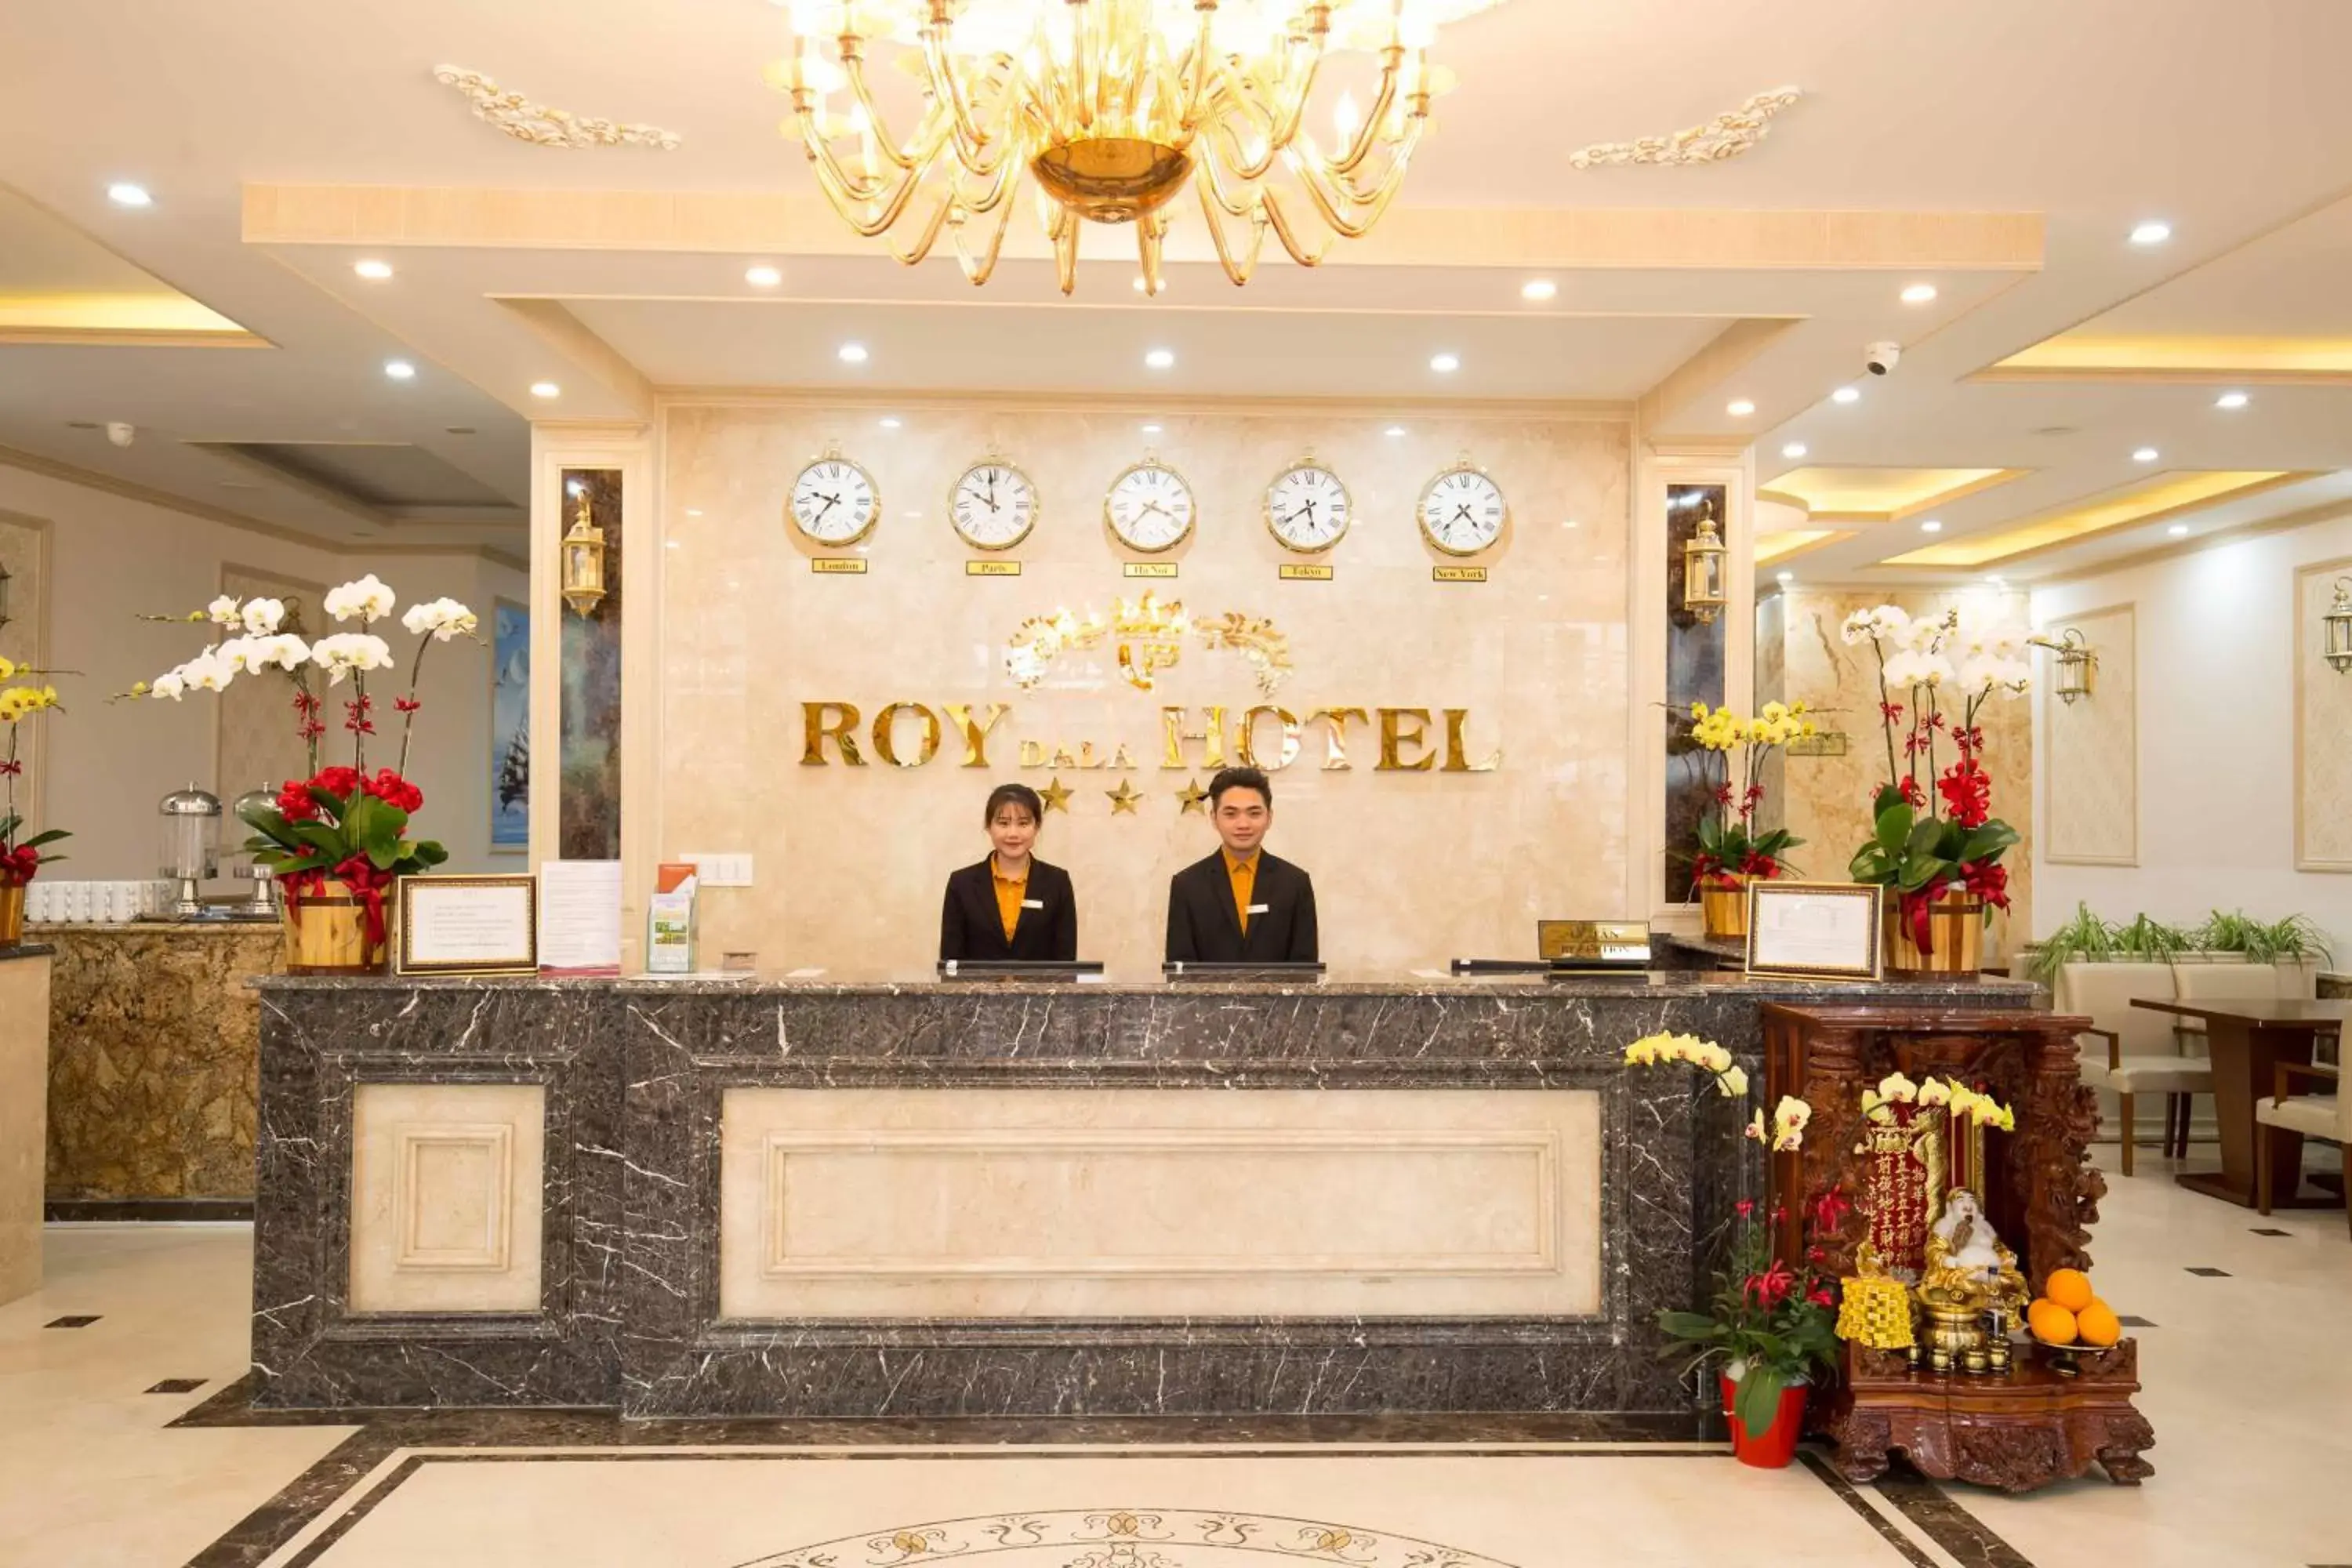 Staff, Lobby/Reception in Roy Dala Hotel